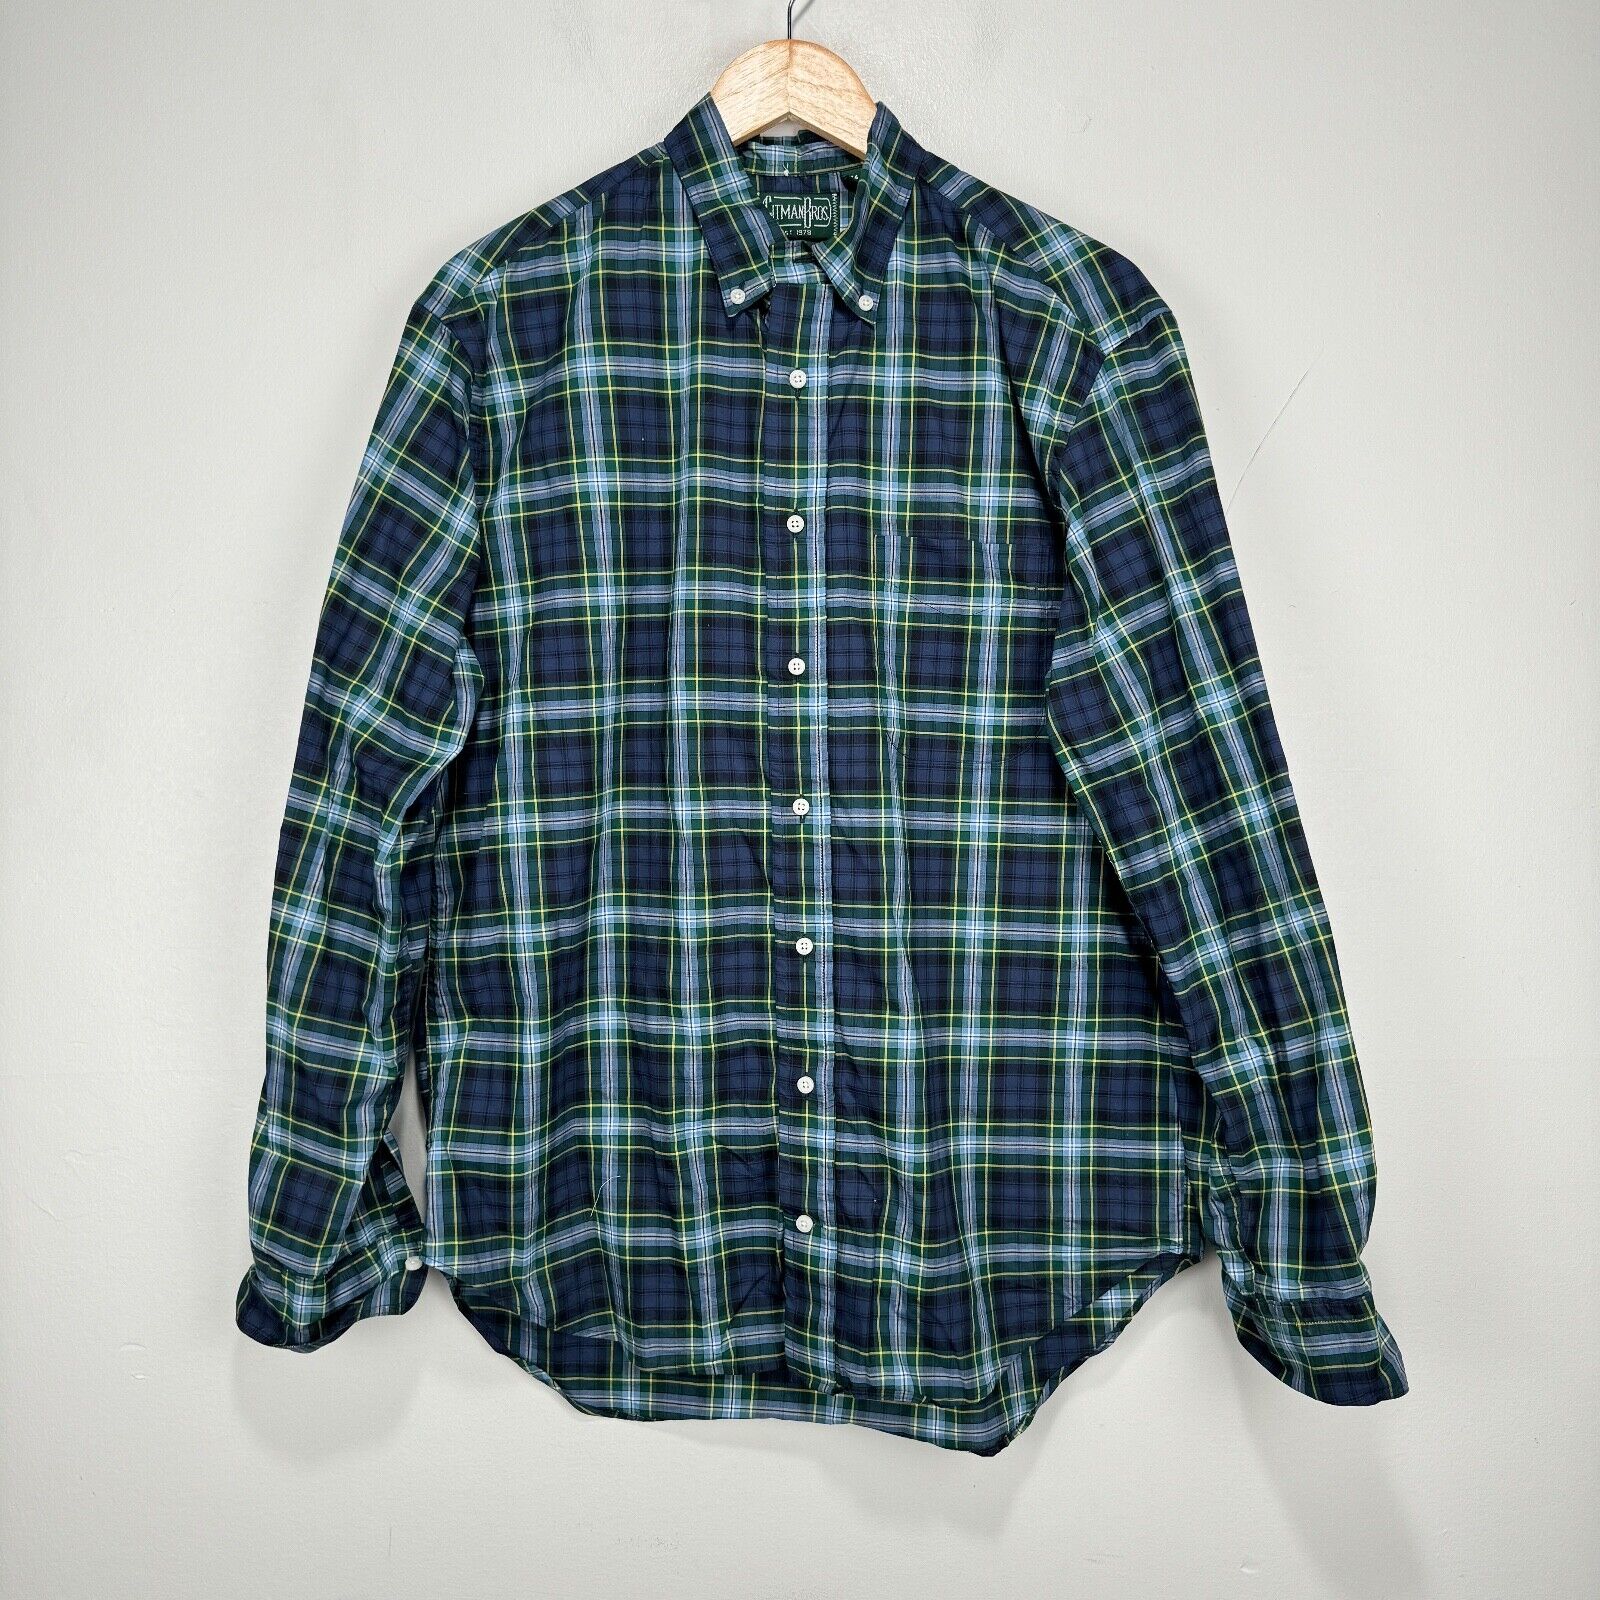 Gitman Bros Vintage Button Shirt Men Medium Green Blue Check Cotton USA Made